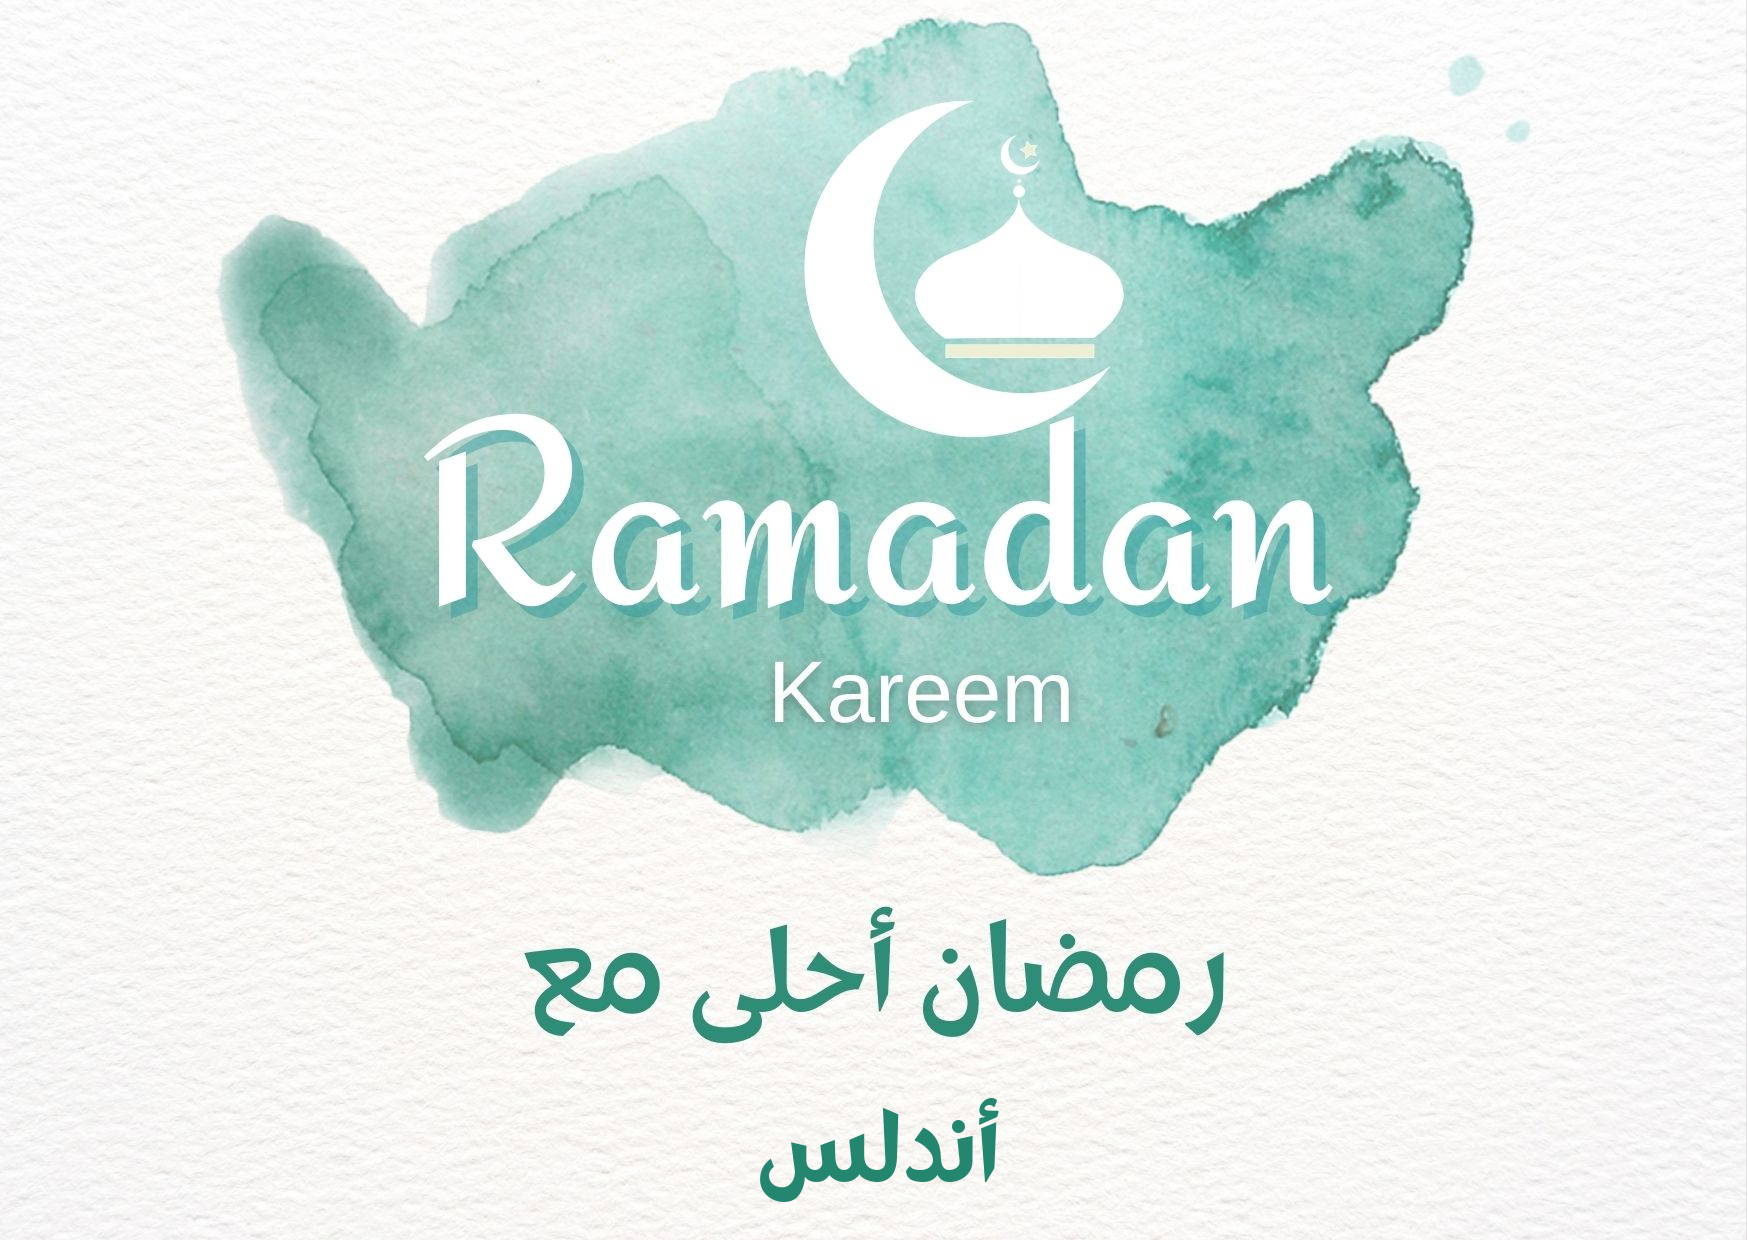 اسم أندلس على صورة ضمن خدمة تصميم رمضان احلي مع اسمك